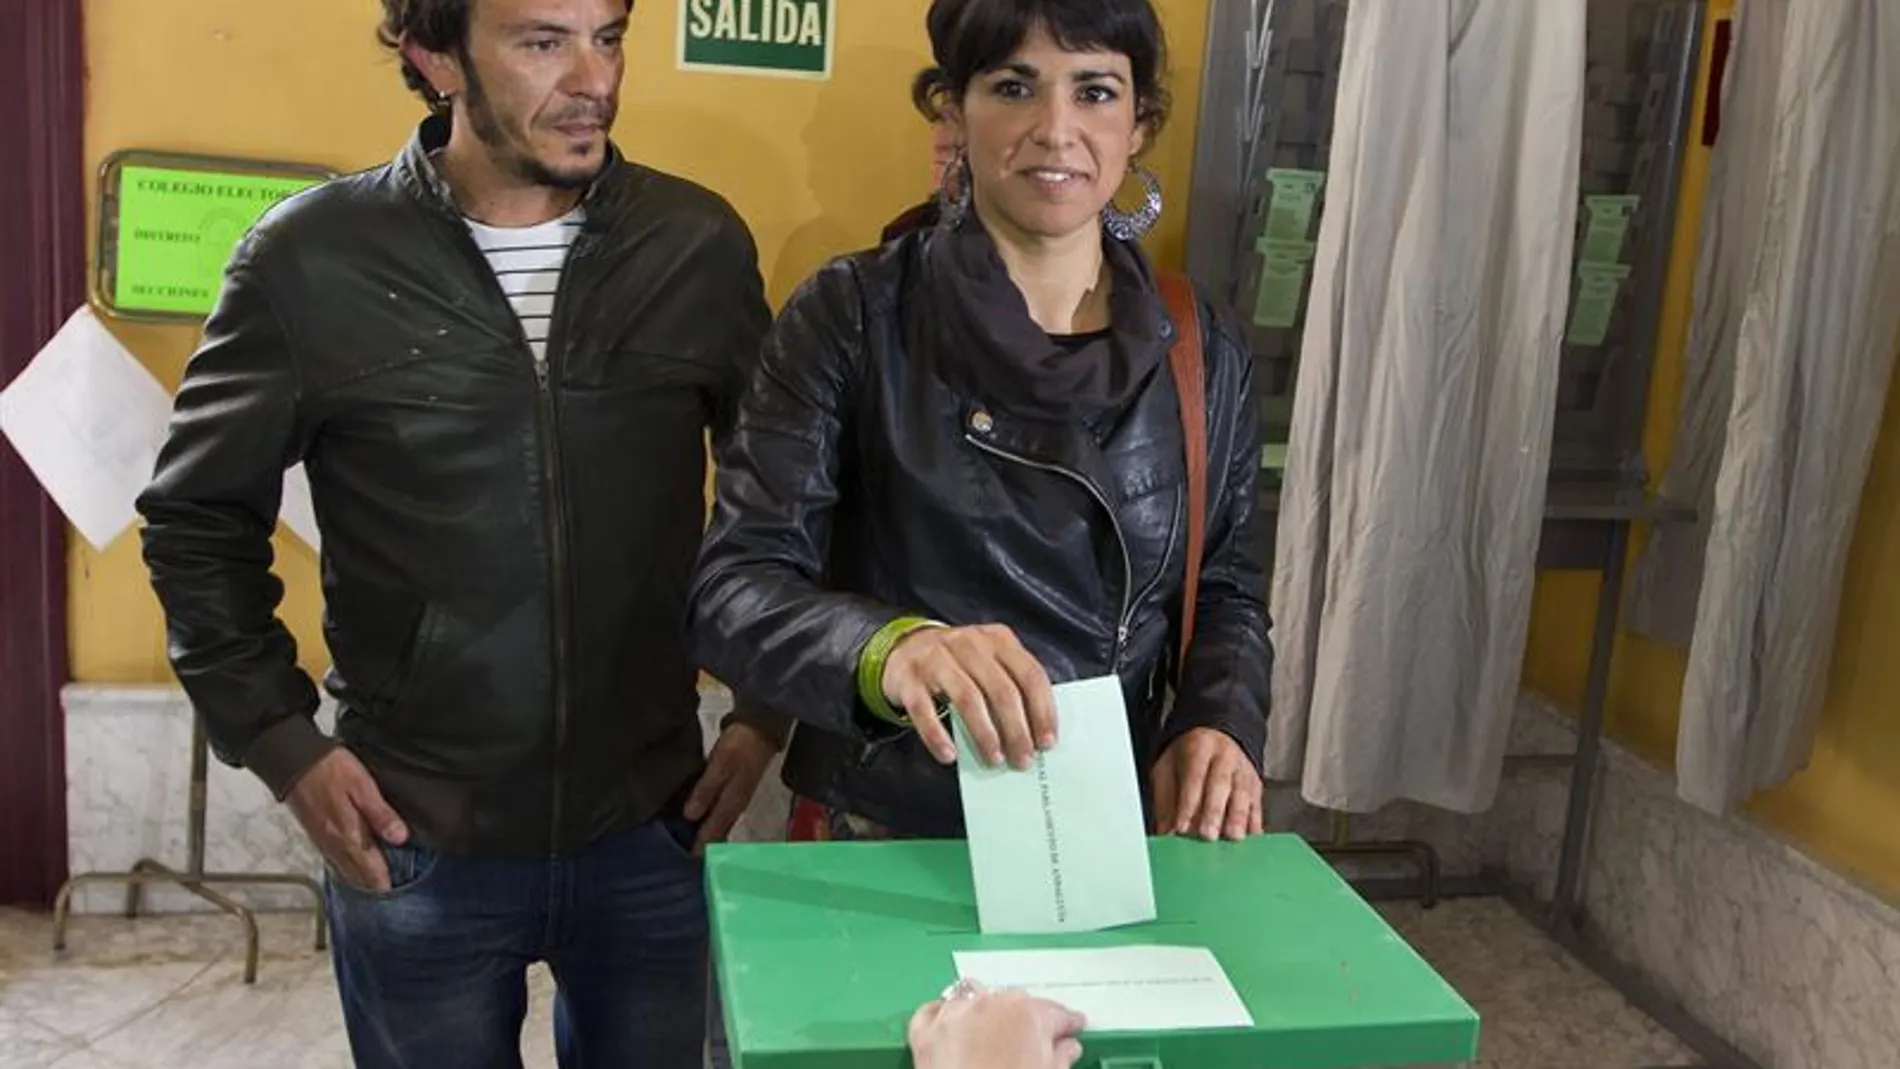 La candidata de Podemos a la Junta de Andalucía, Teresa Rodríguez, ejerce su derecho al voto 